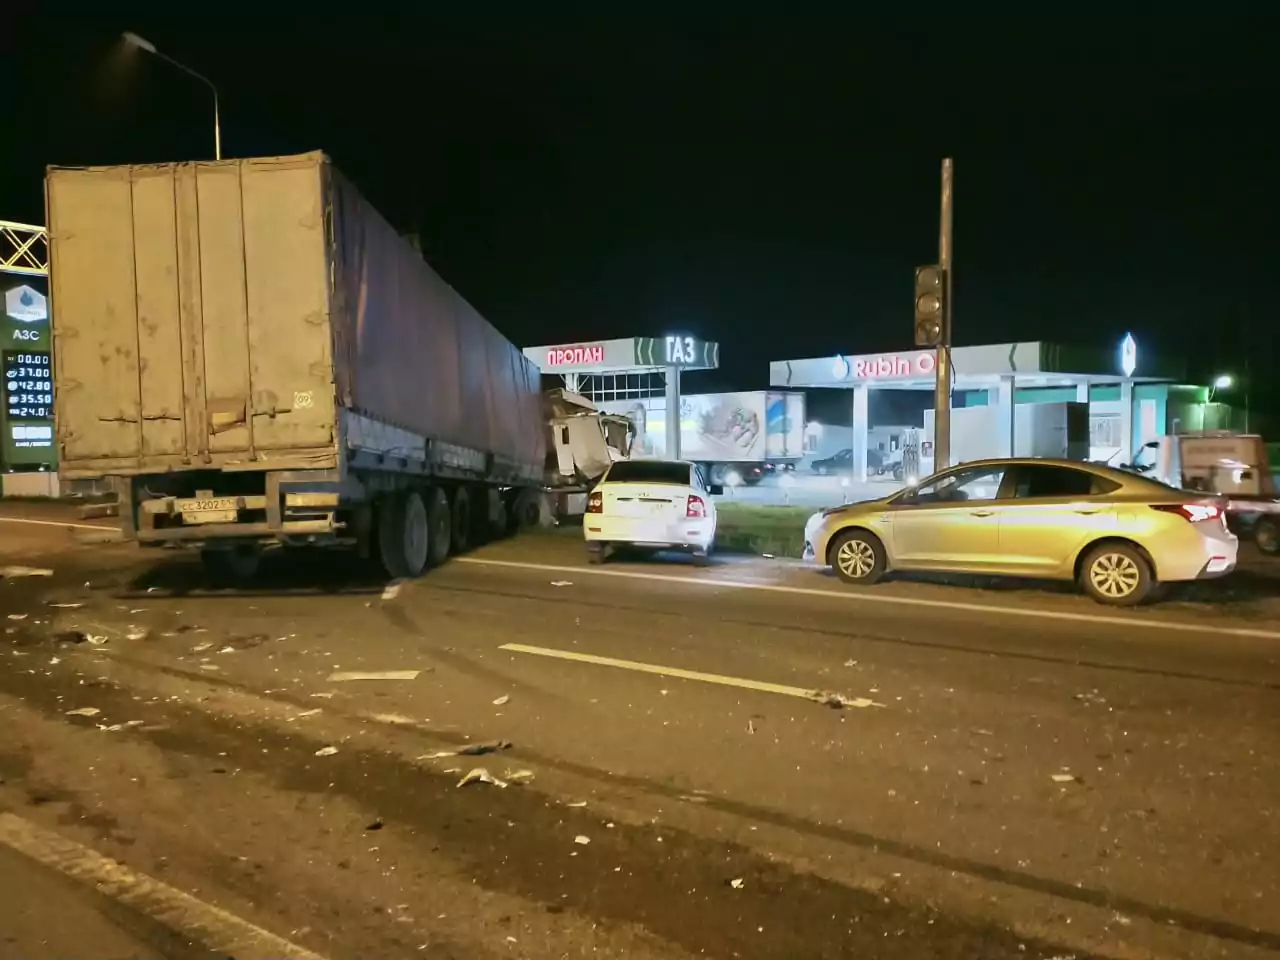 Поздно вечером в Армавире произошло ДТП с участием машины аварийной службы